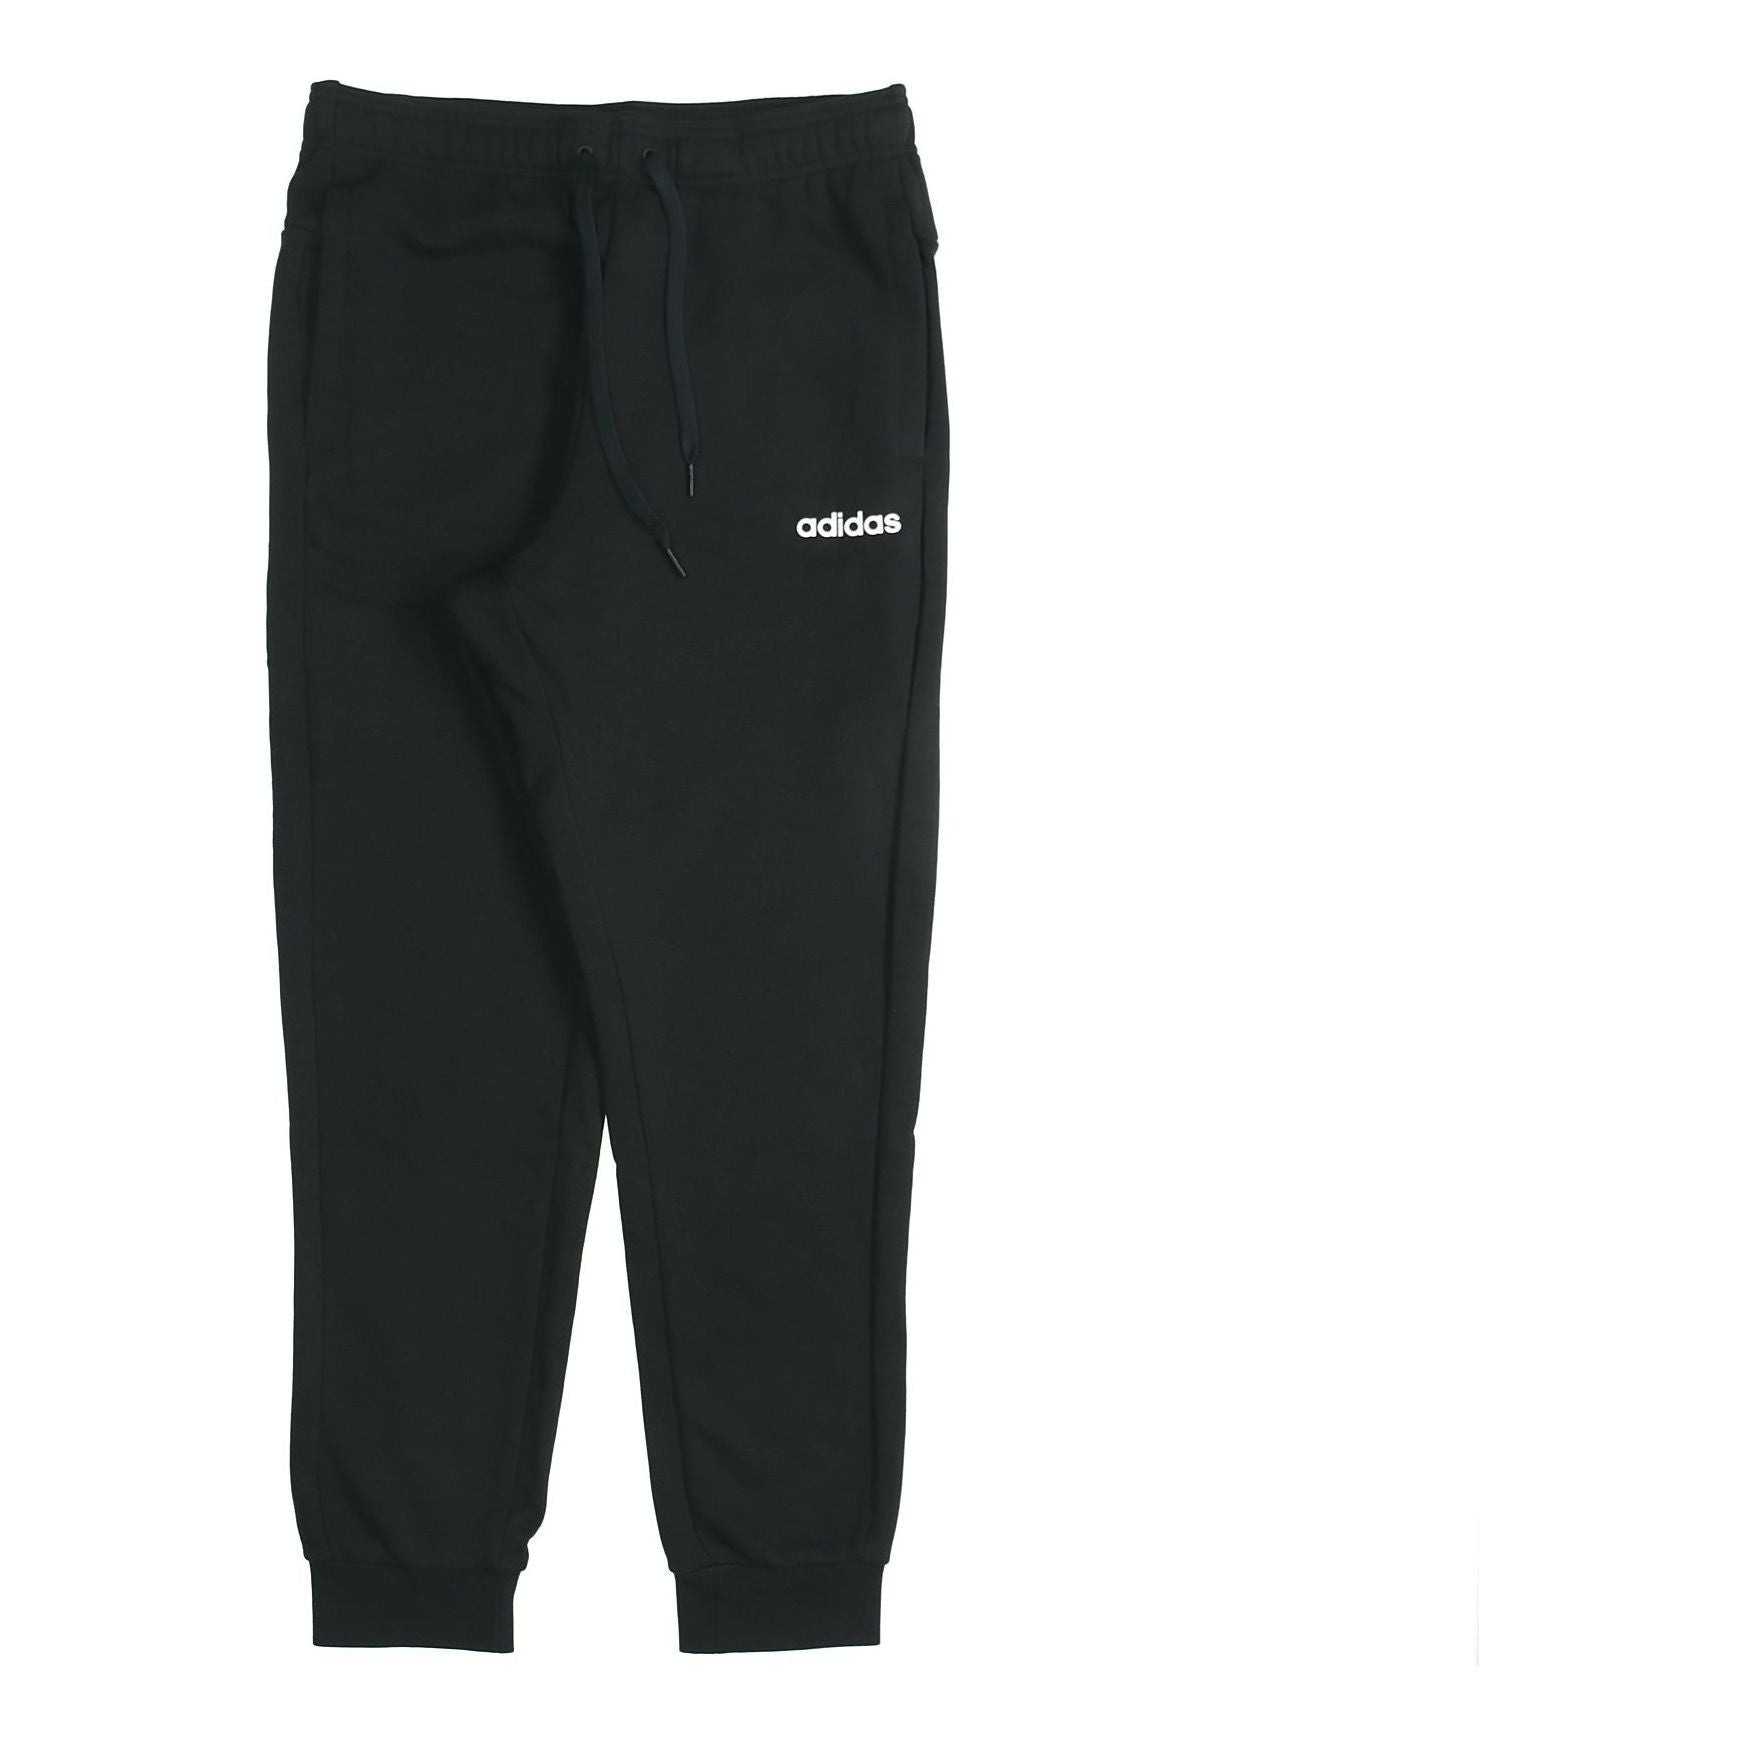 adidas E Pln T Pnt Ft Knitting Sports Trouser Men Black DX3686 - 1